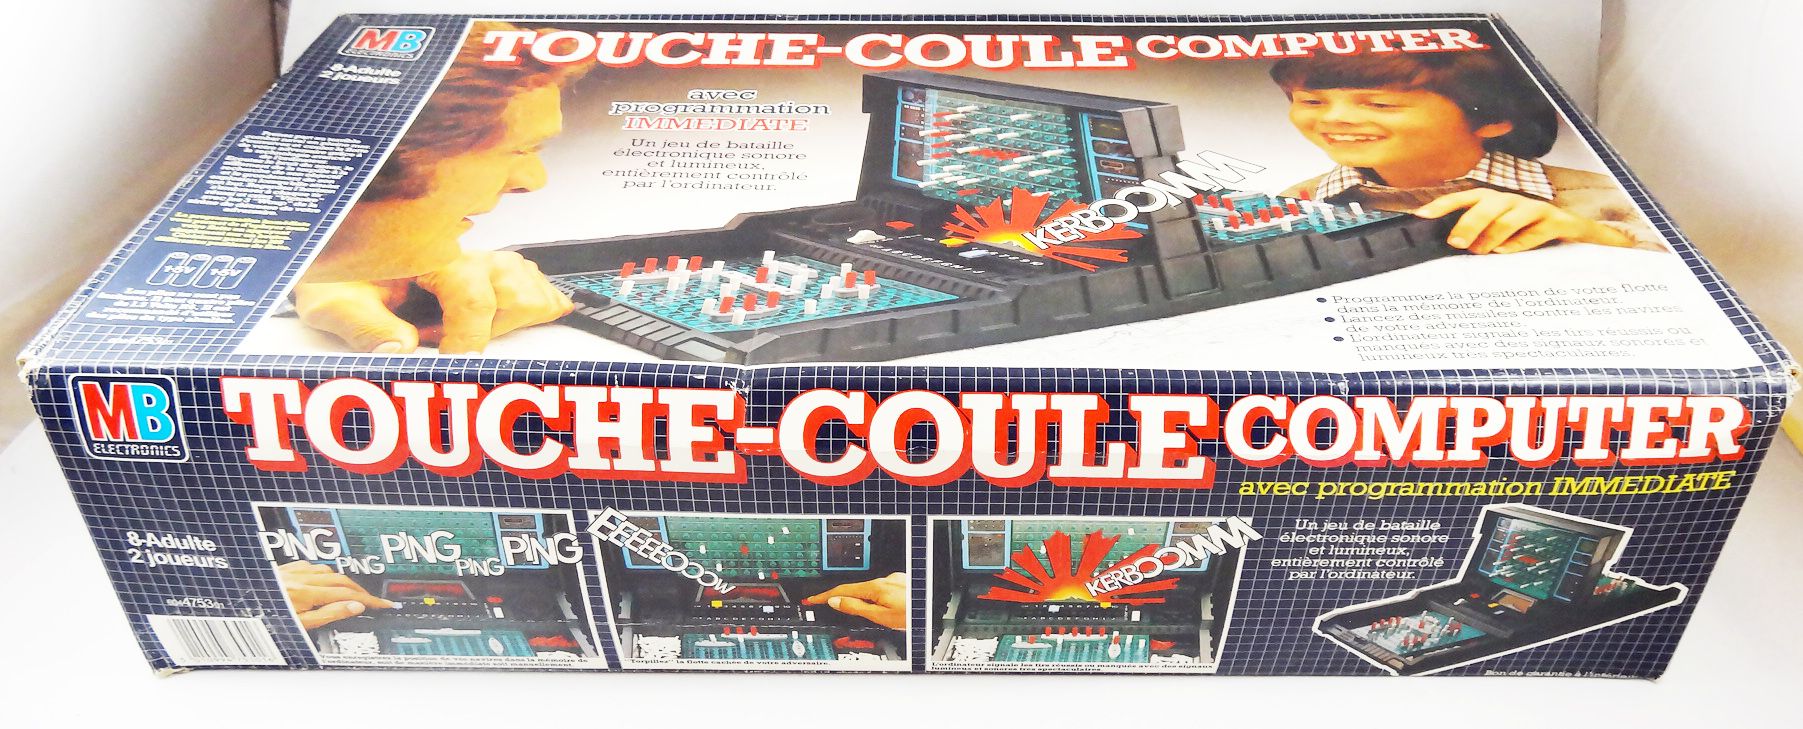 JEU BATAILLE NAVALE Électronique TOUCHE-COULE - MB 1977 EUR 50,00 -  PicClick FR